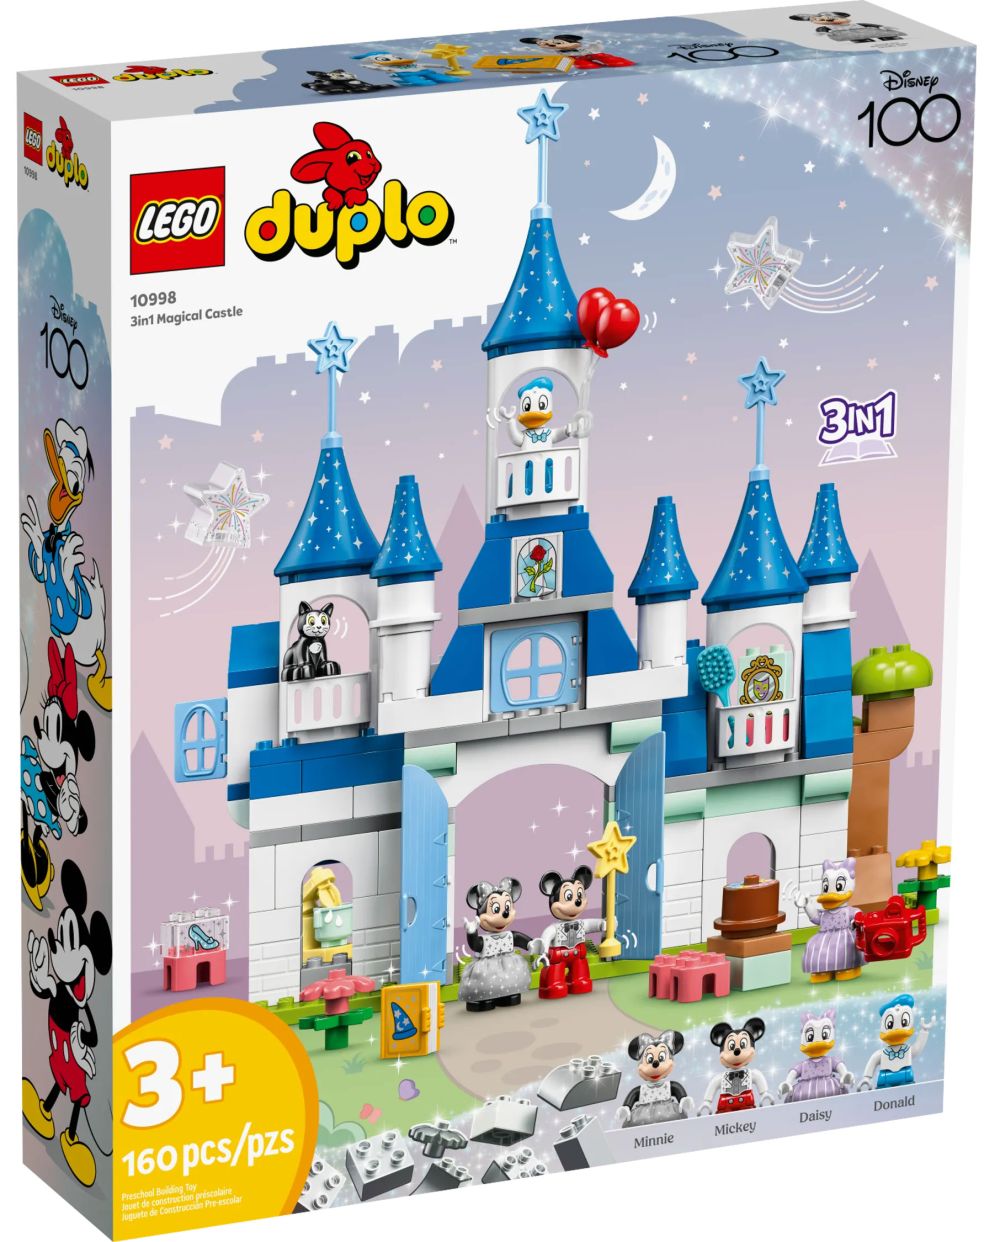 LEGO Duplo 10998 pas cher, Le château magique 3-en-1